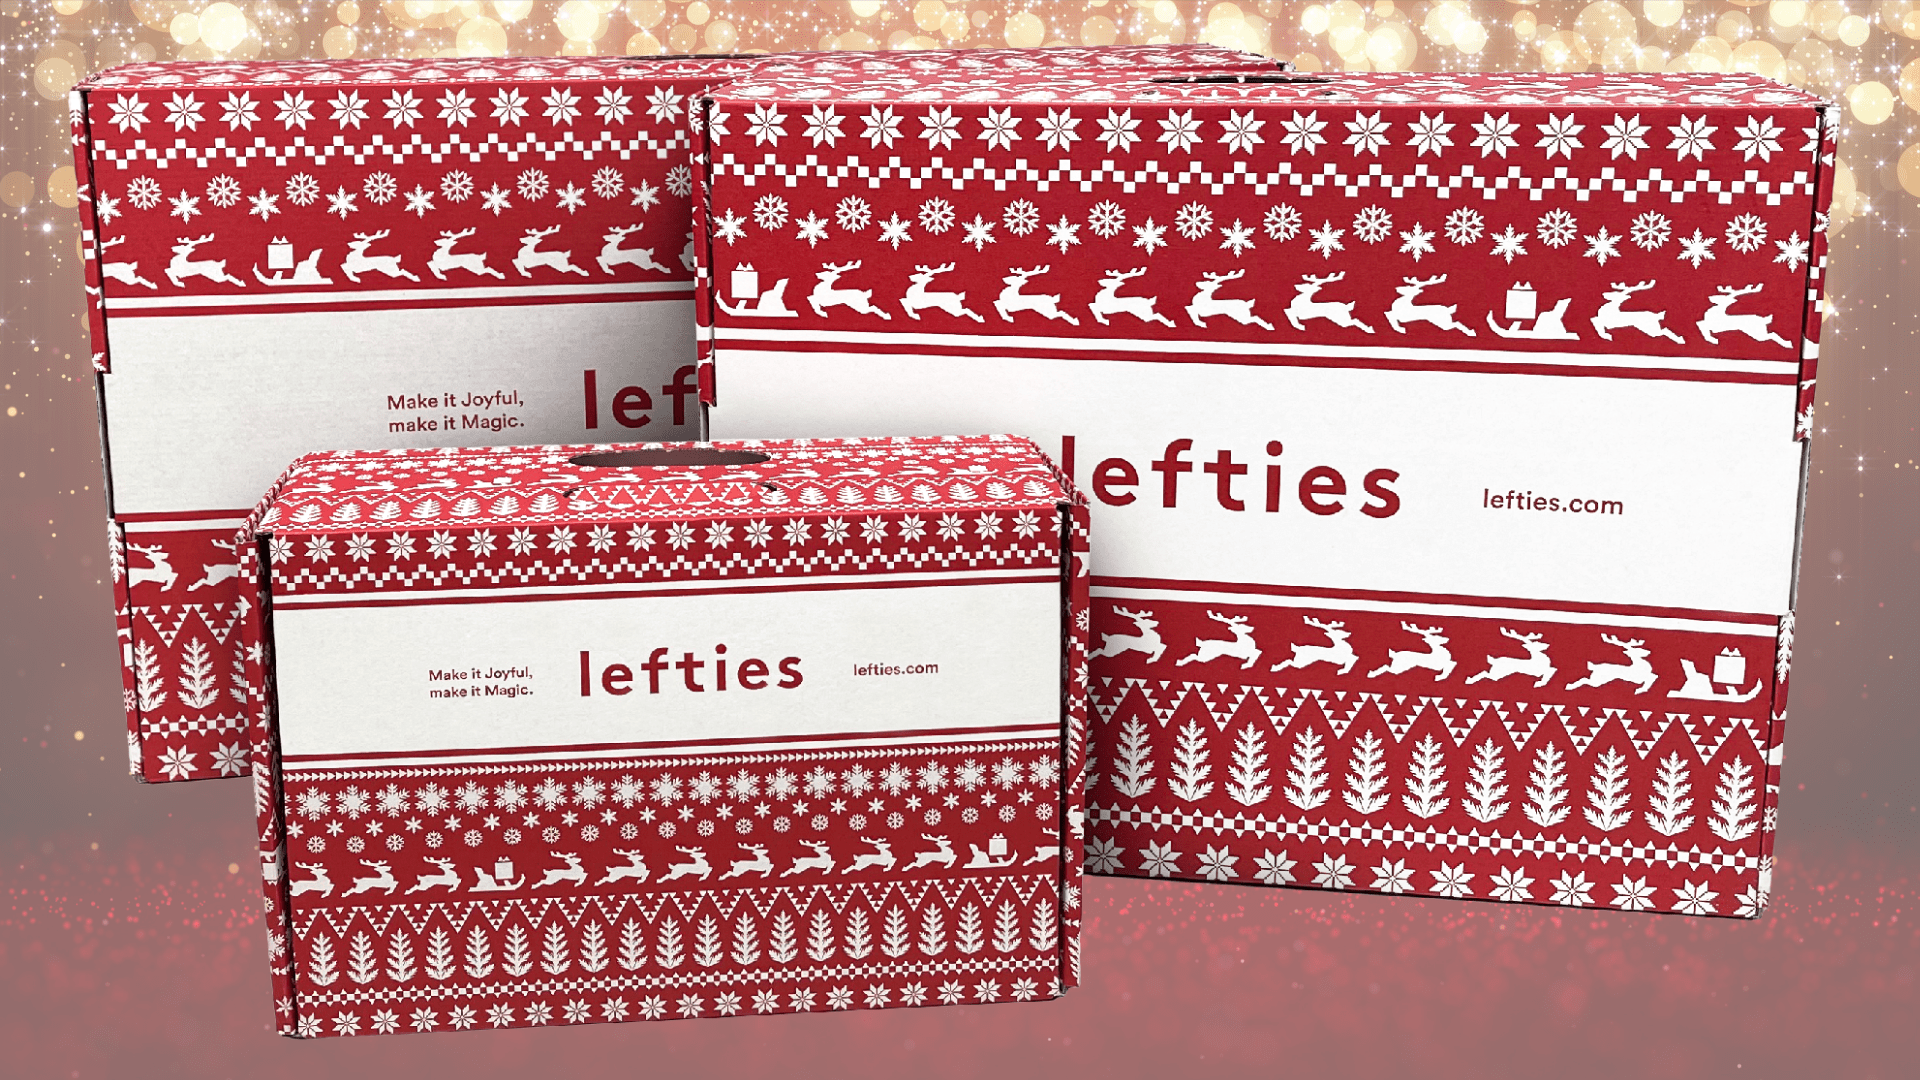 Lefties mejora su experiencia de usuario en Navidad con un nuevo embalaje eCommerce de Smurfit Kappa